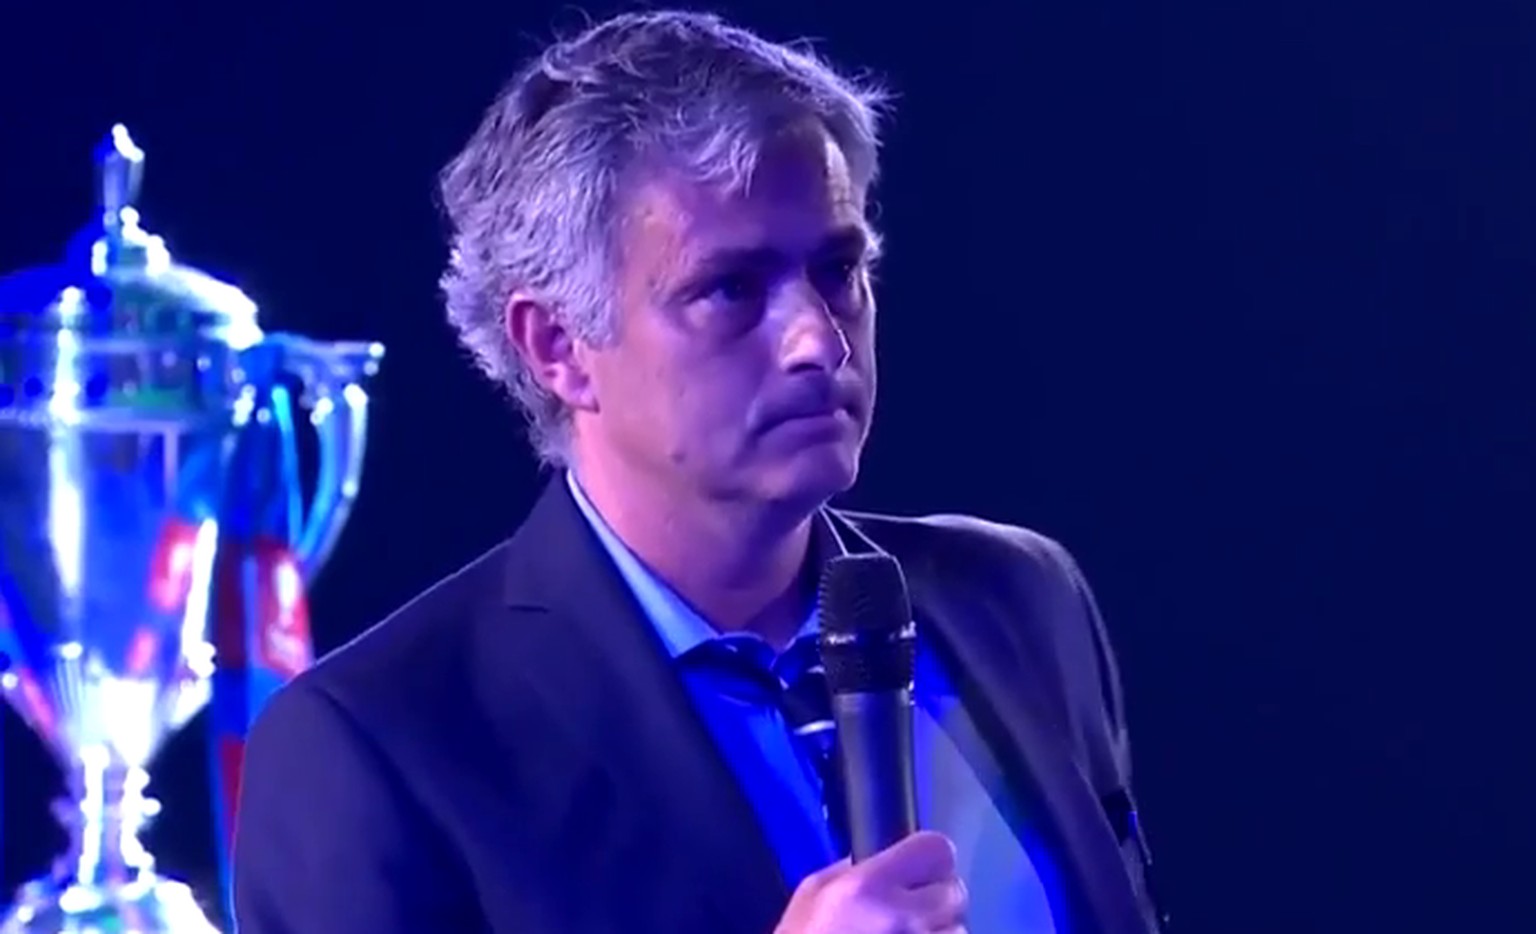 José Mourinho präsentiert sich bei der Chelsea-Meisterfeier in absoluter Hochform.